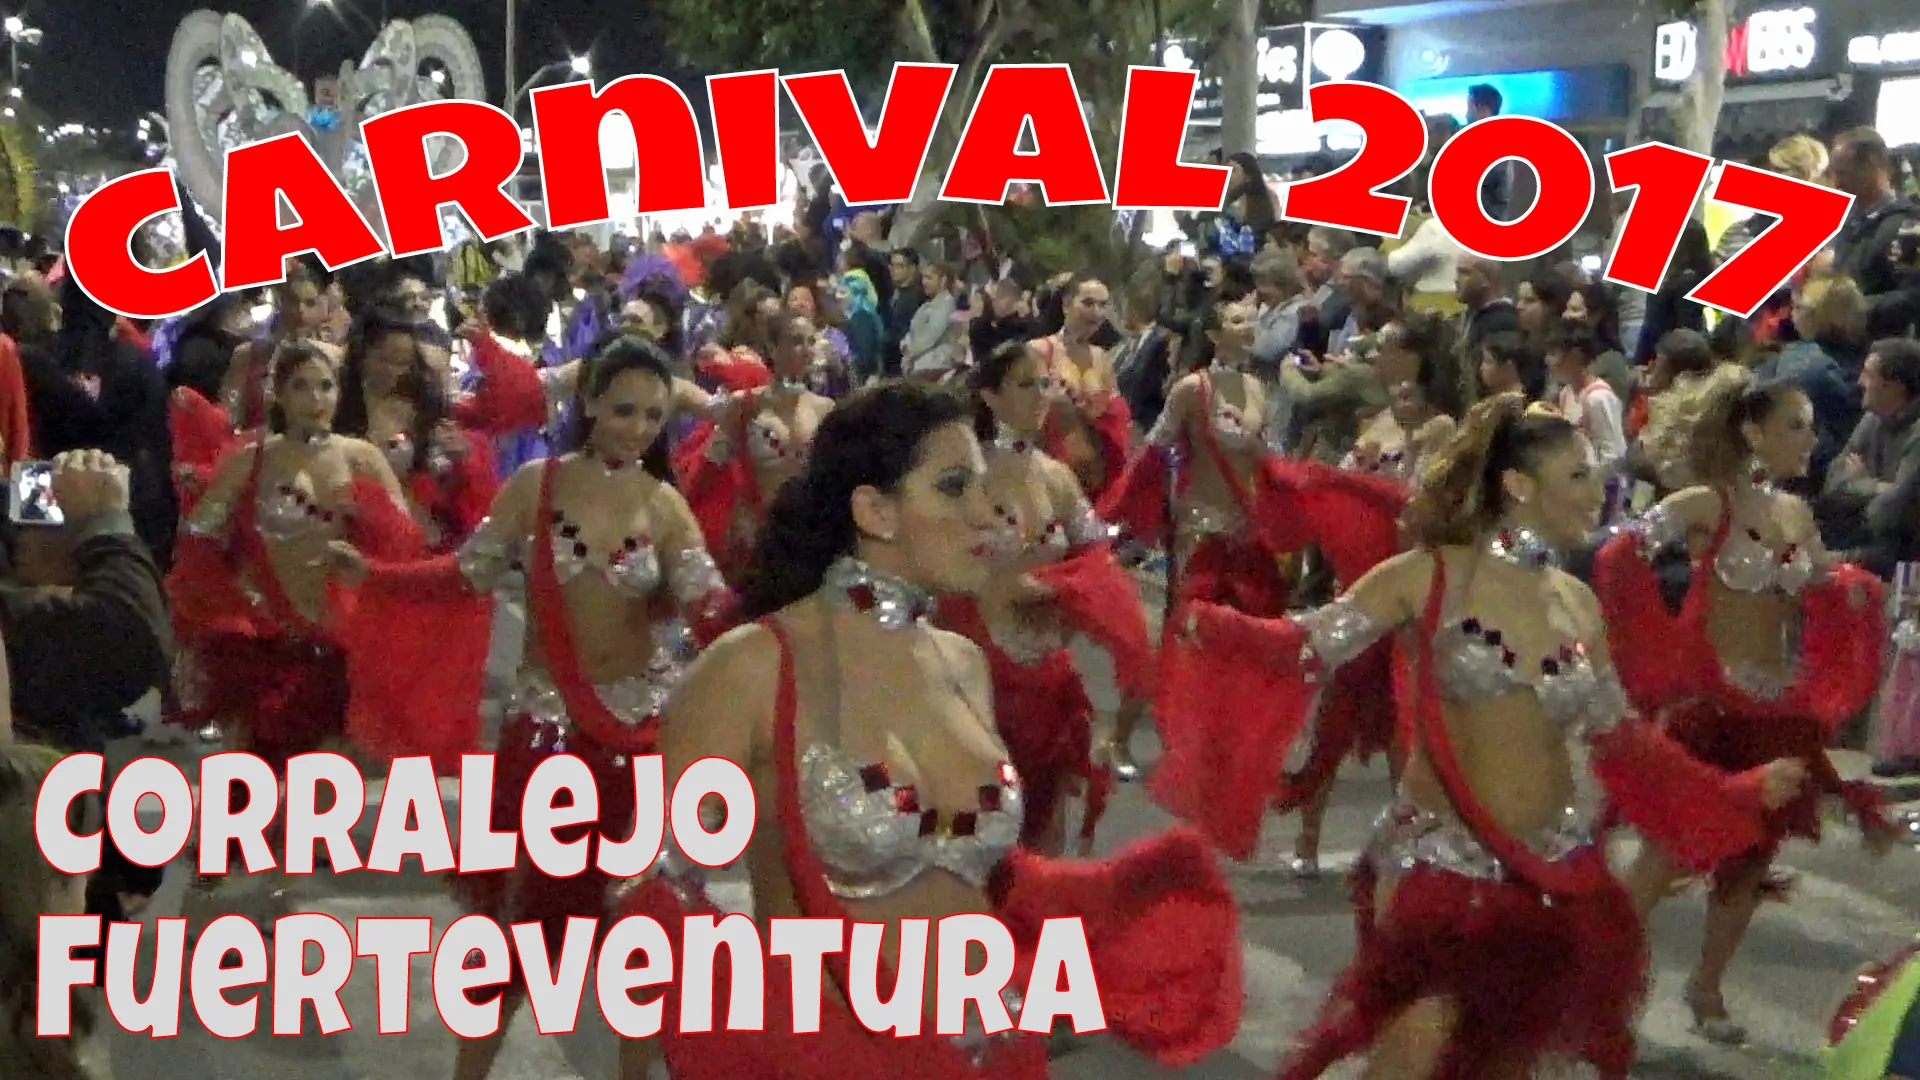 Corralejo Carnival 2017 – Carnaval de Corralejo 2017